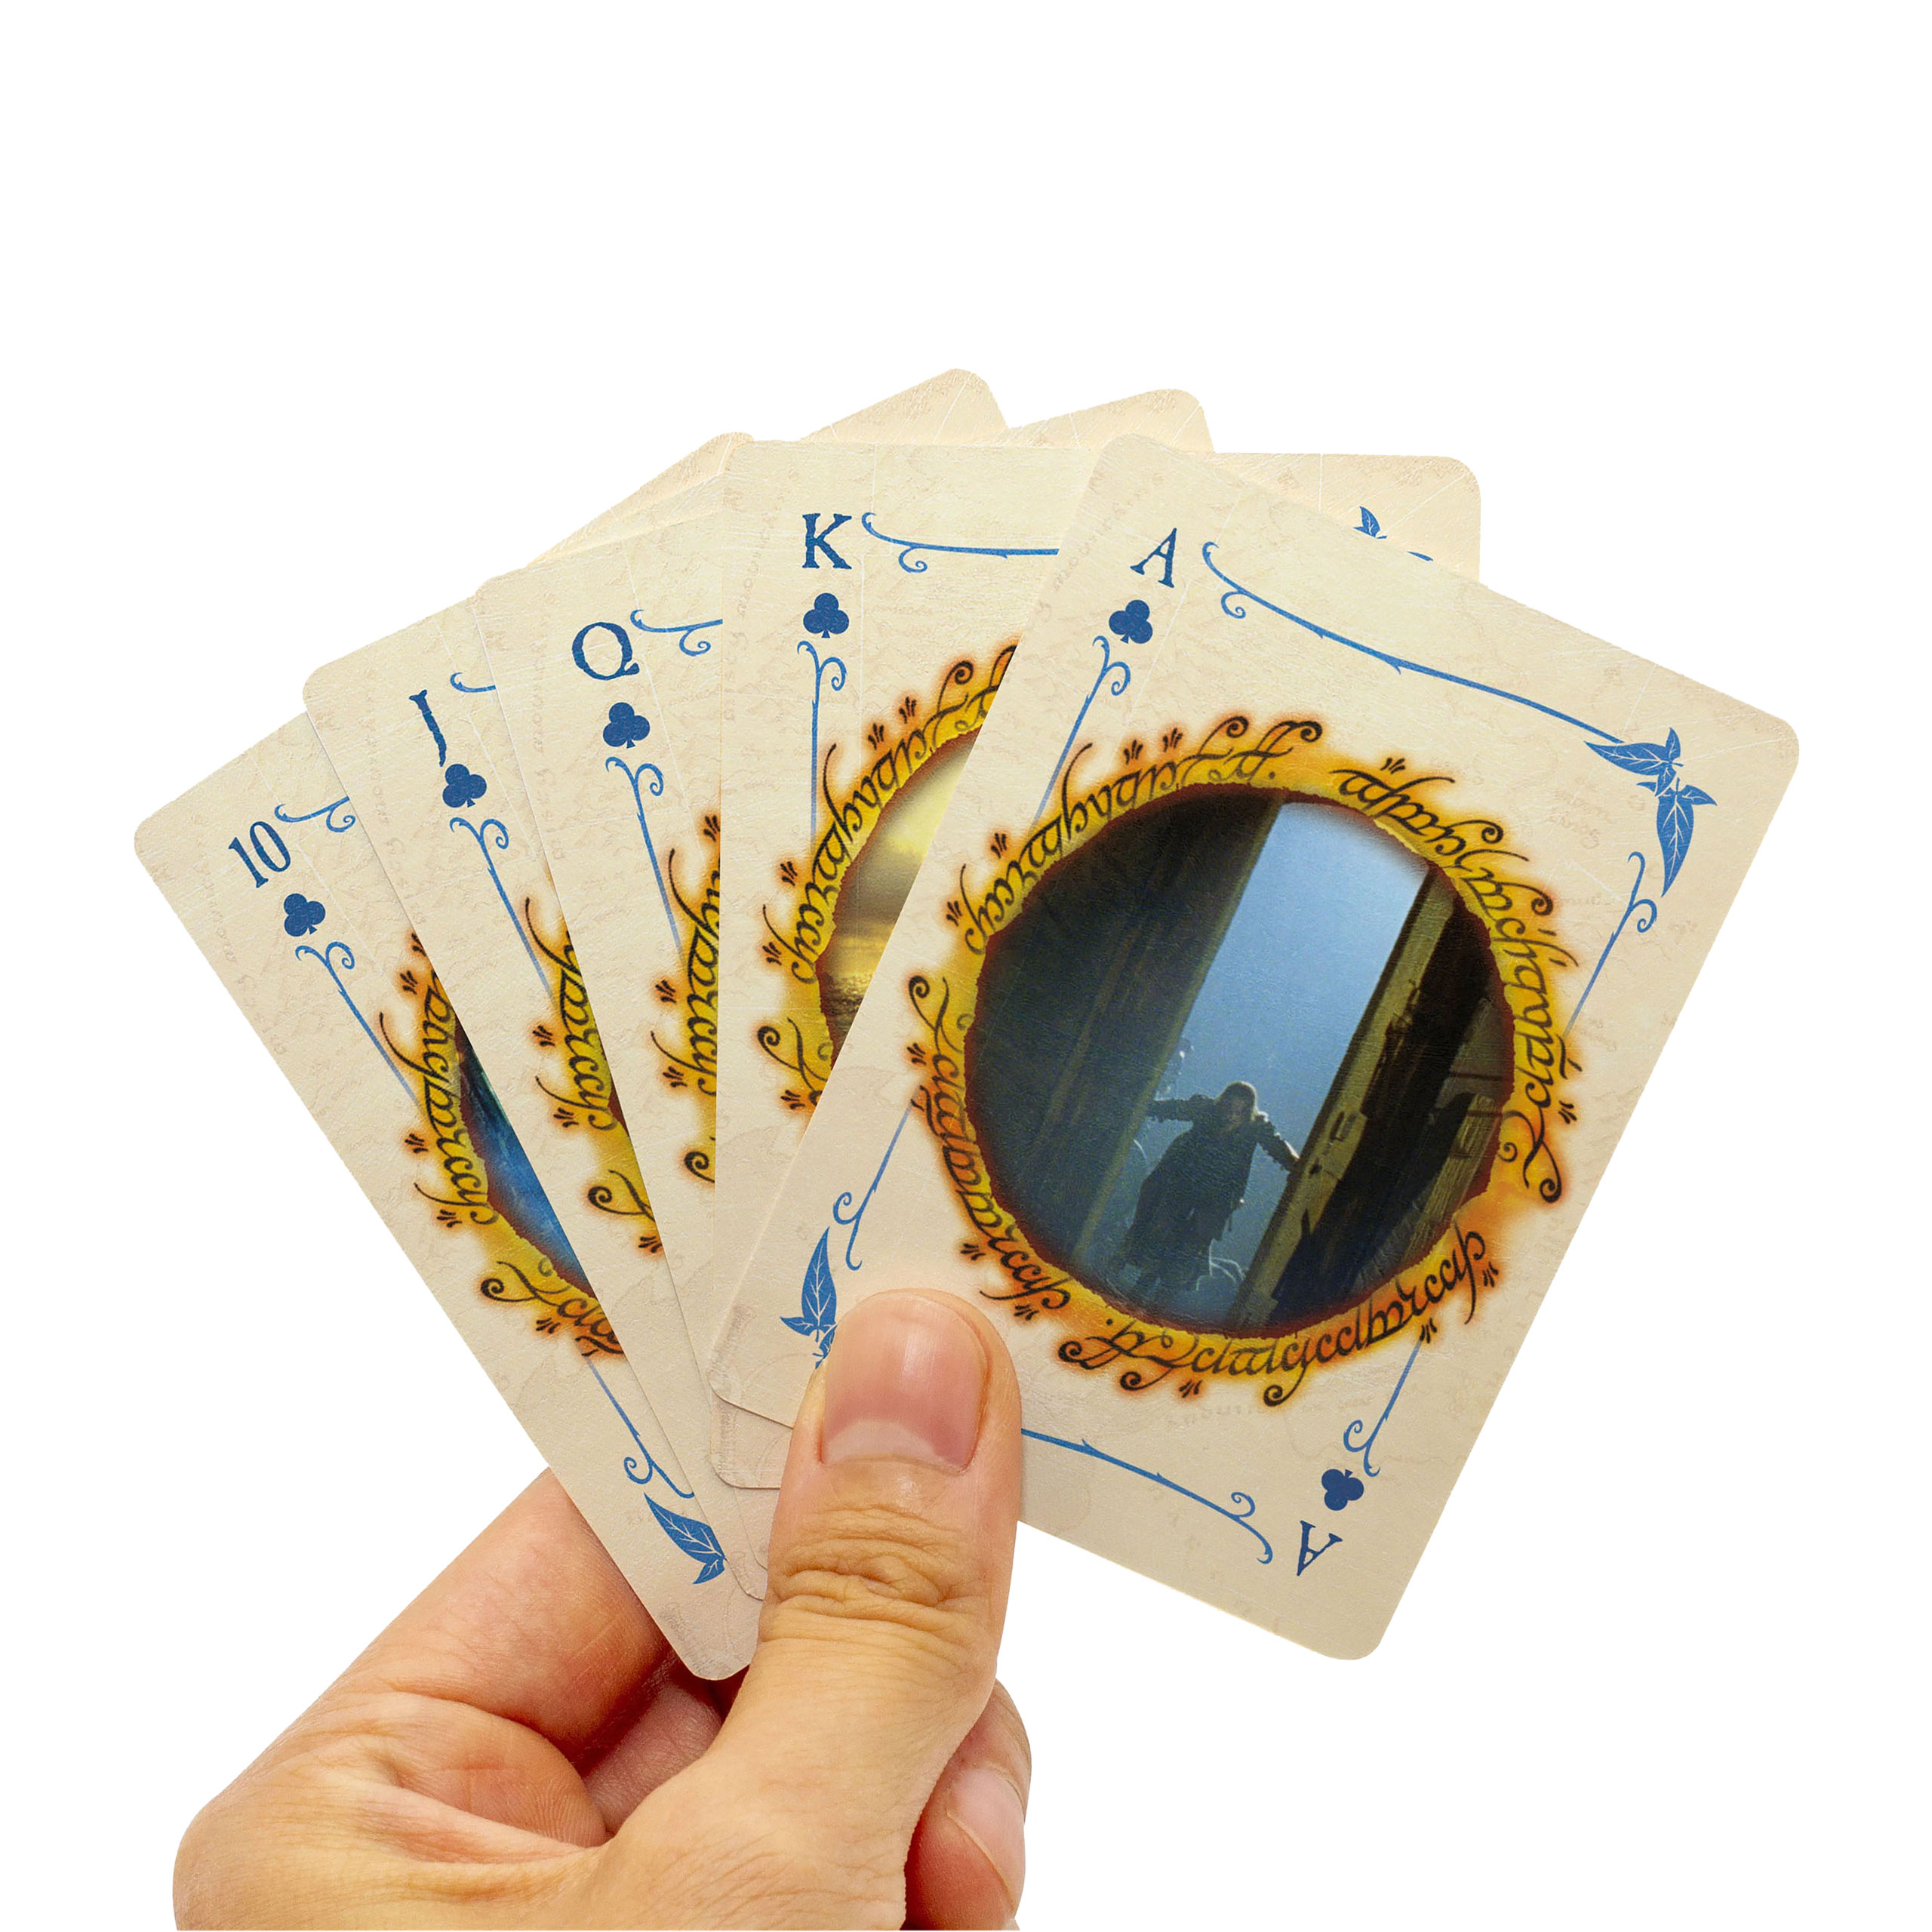 Herr der Ringe - Die zwei Türme Spielkarten